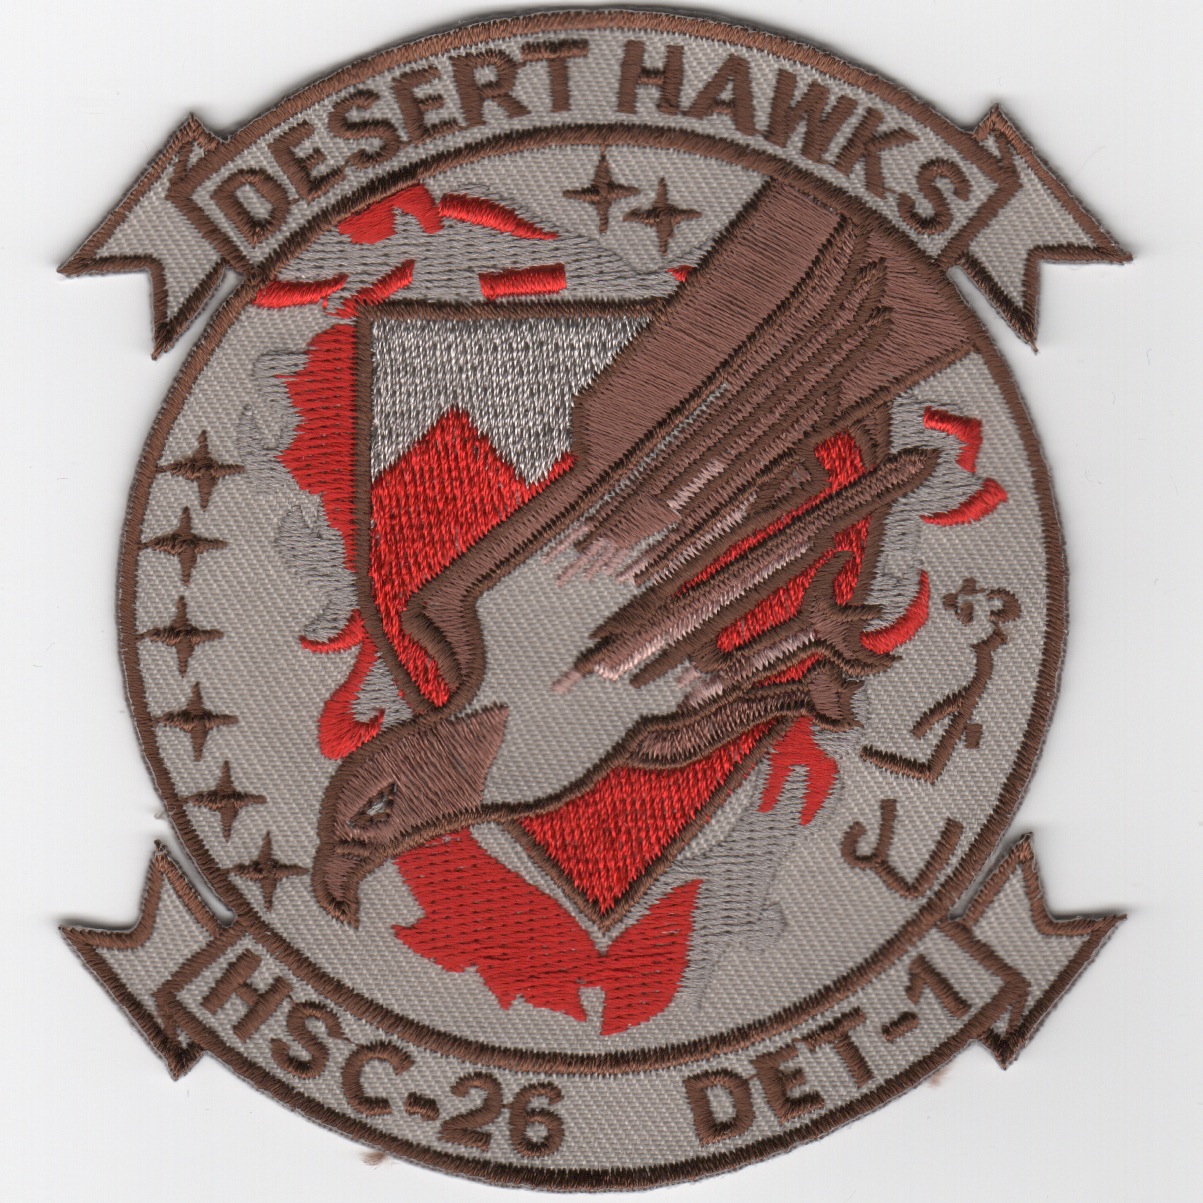 HSC-26 Det-1 'DESERT HAWKS' Patch (Des/Red)